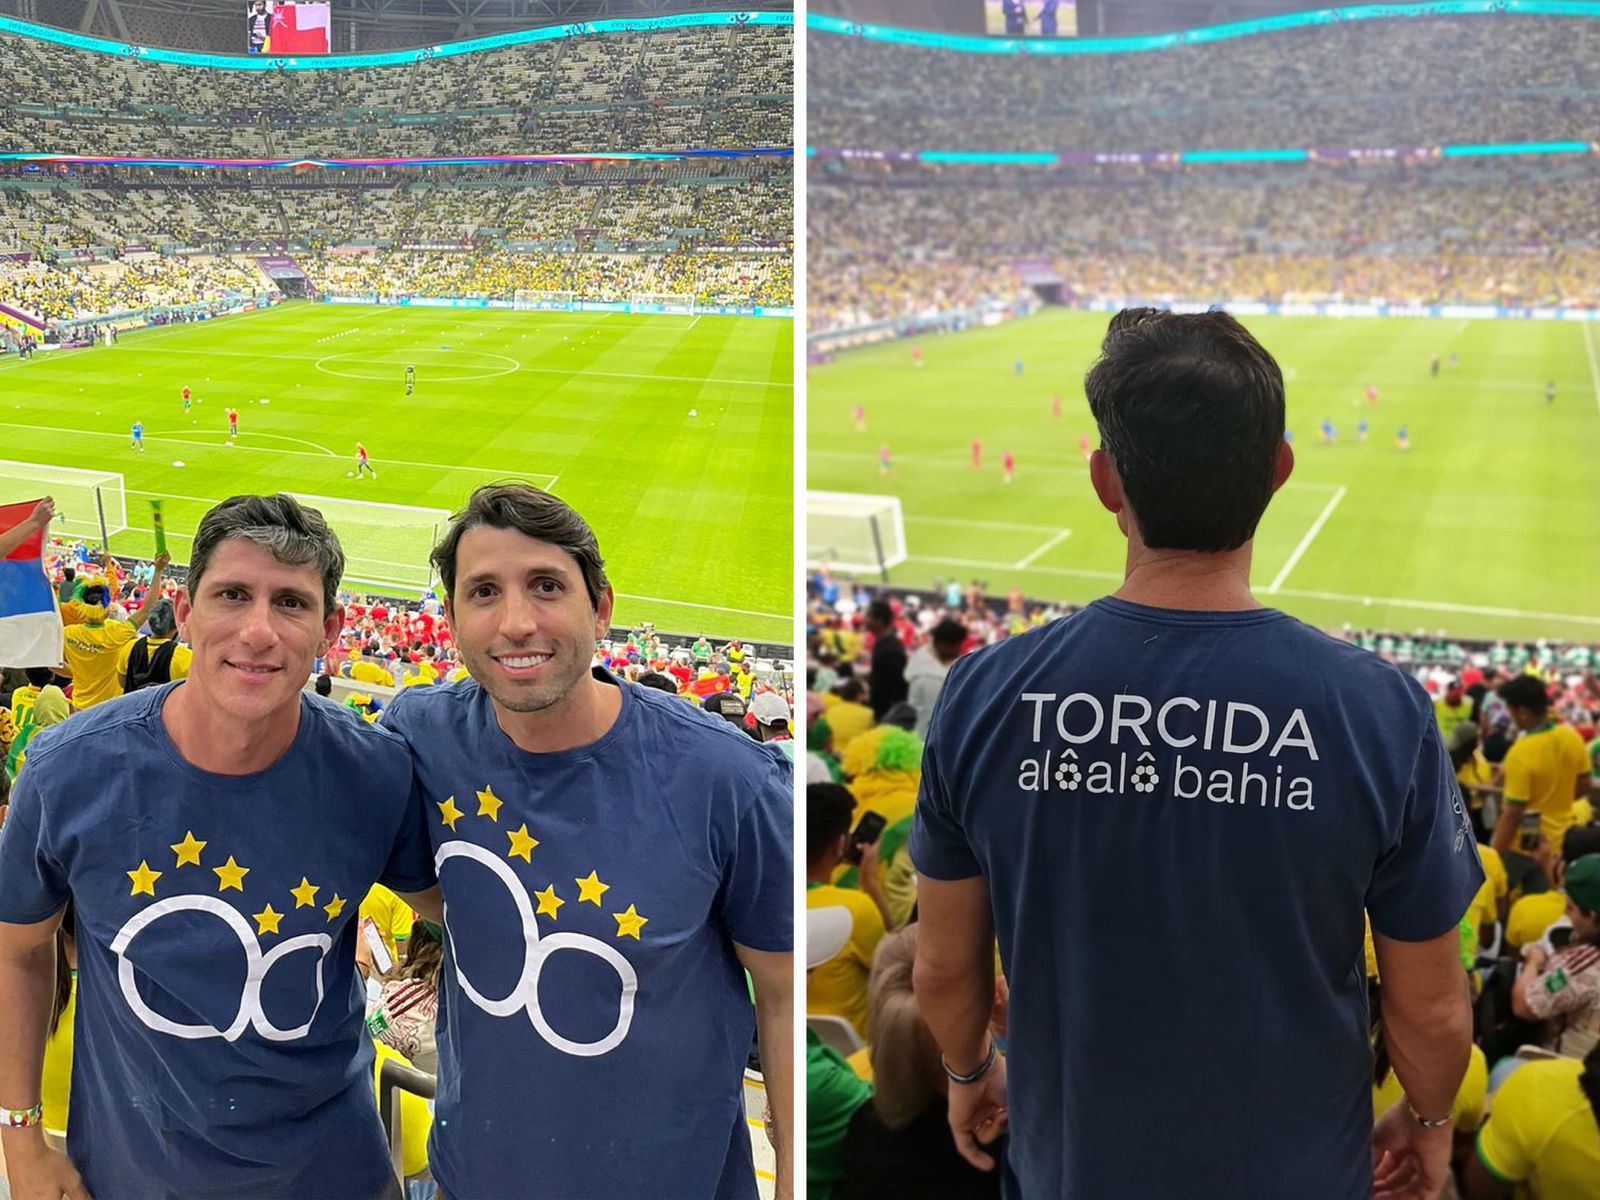 Baianos assistem à estreia da seleção brasileira em Doha com camisa da Torcida Alô Alô